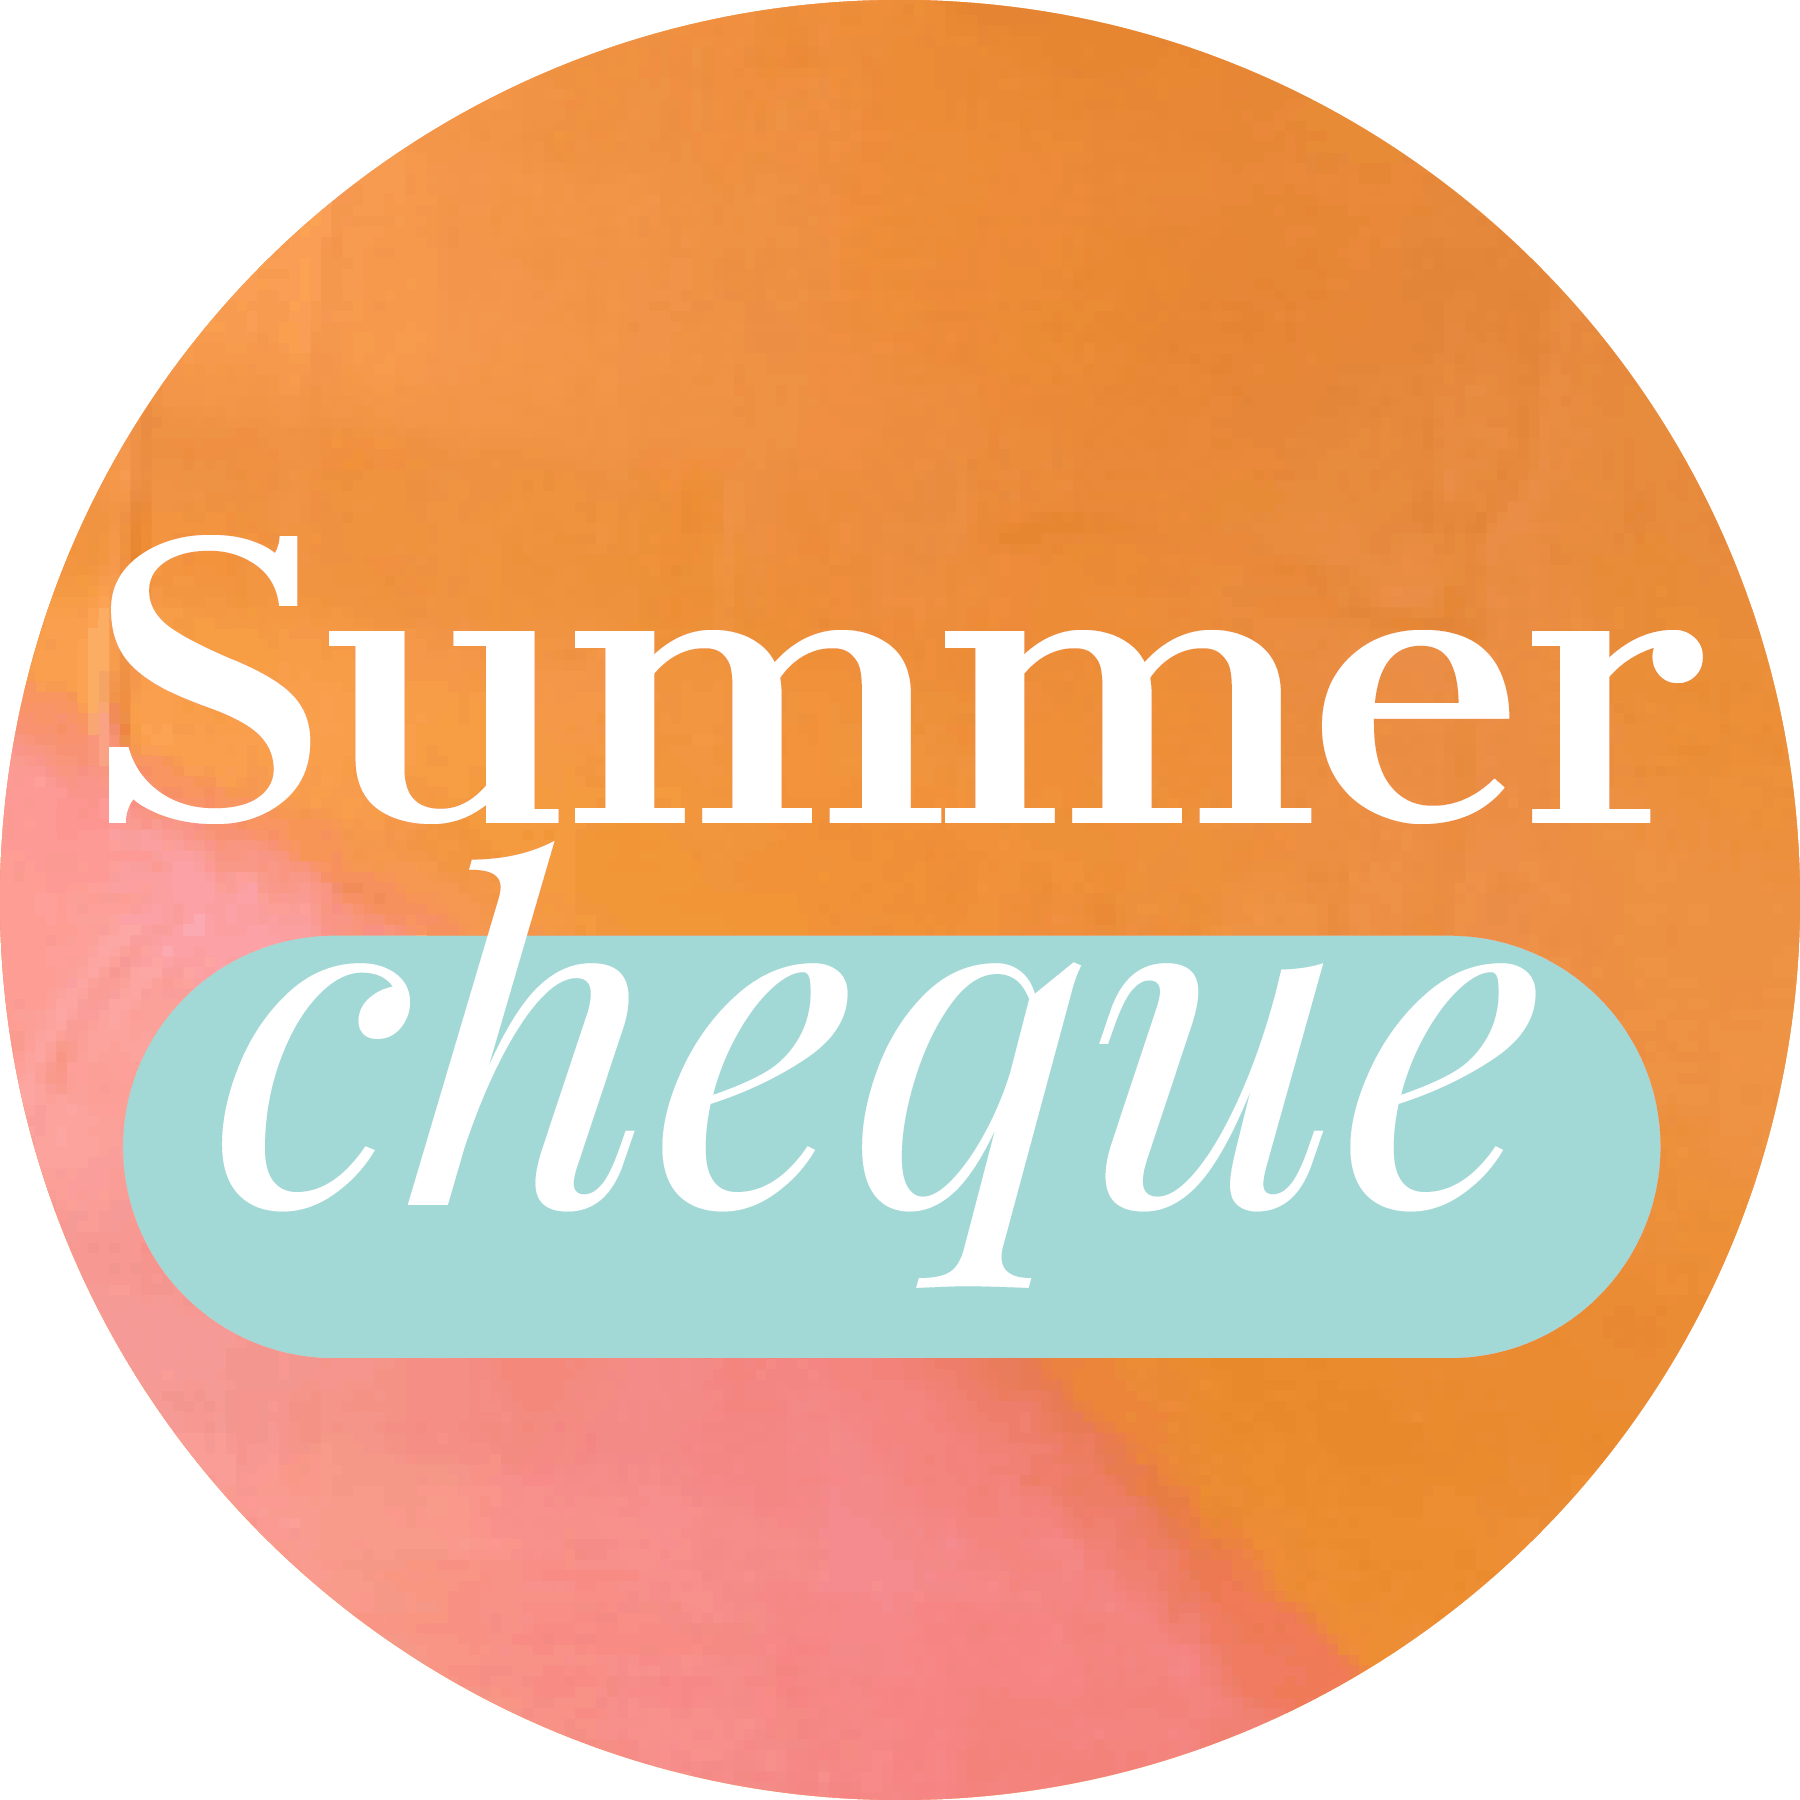 Summer cheque